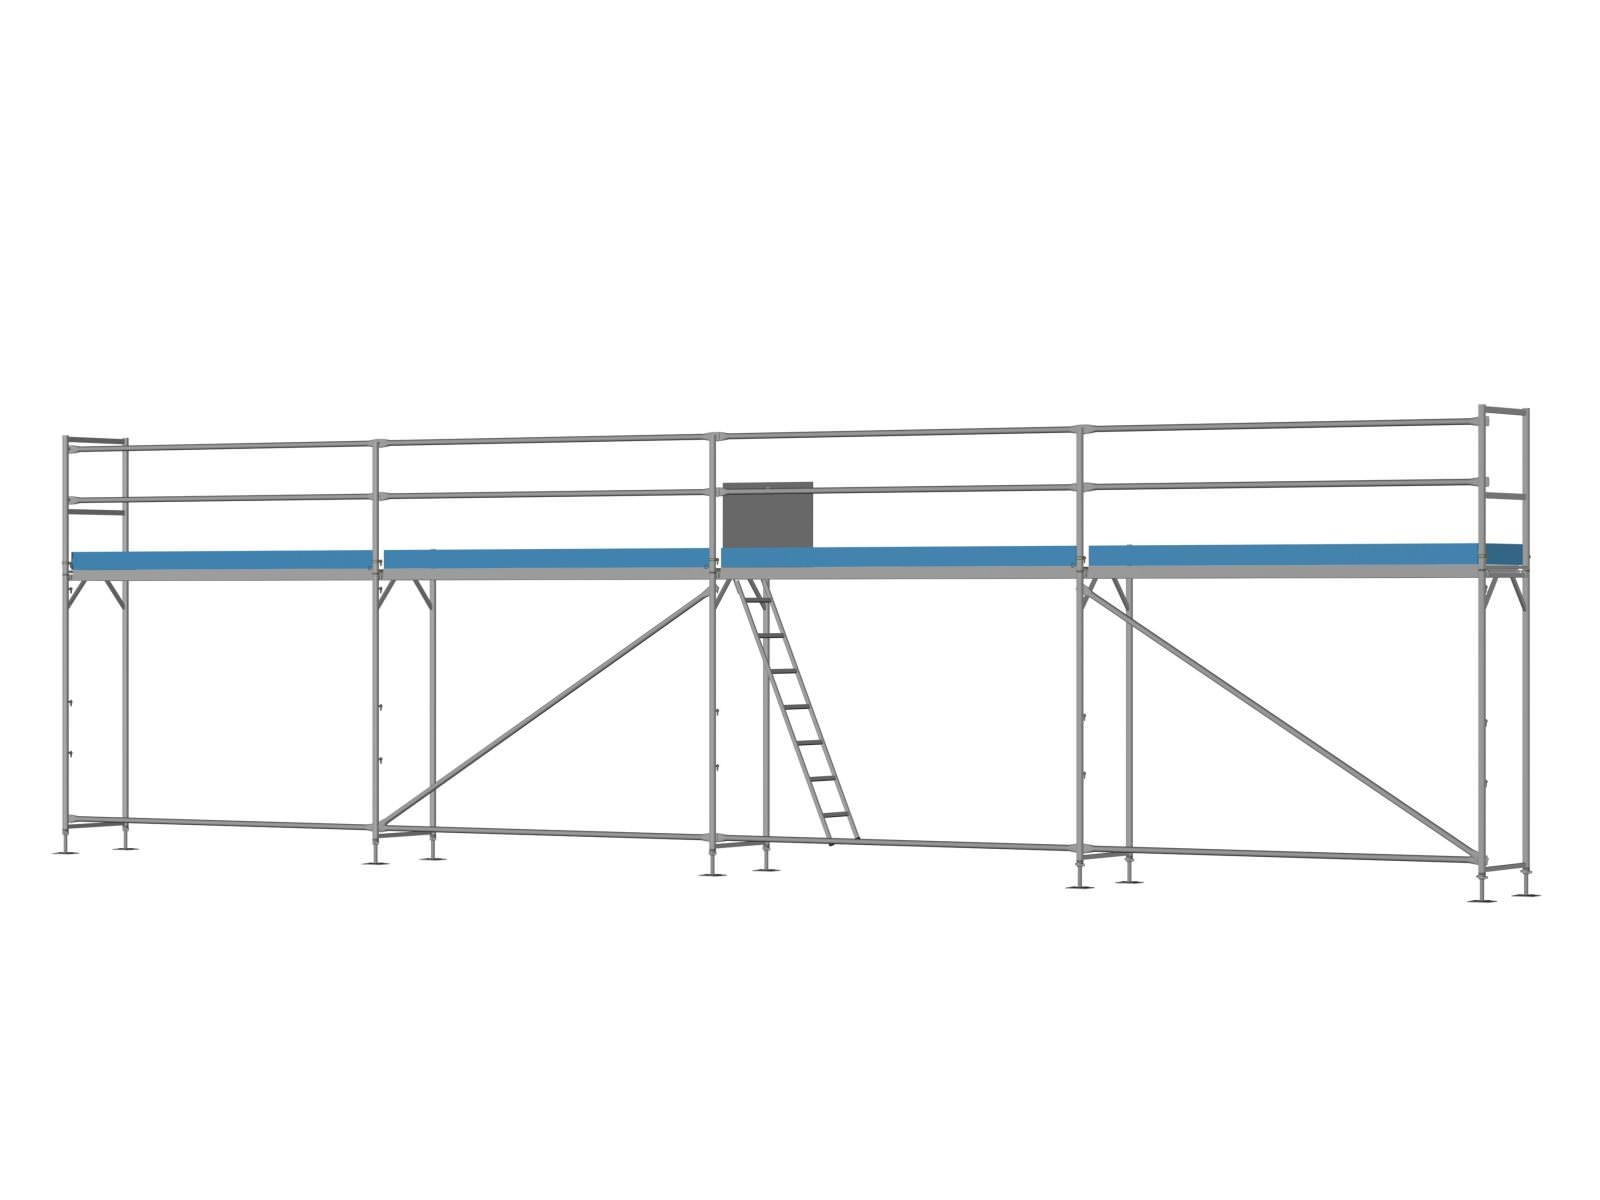 Stahl Traufseitengerüst 48 qm - 3,0 m Felder - 12 m lang - 4 m Arbeitshöhe - Komplettpaket